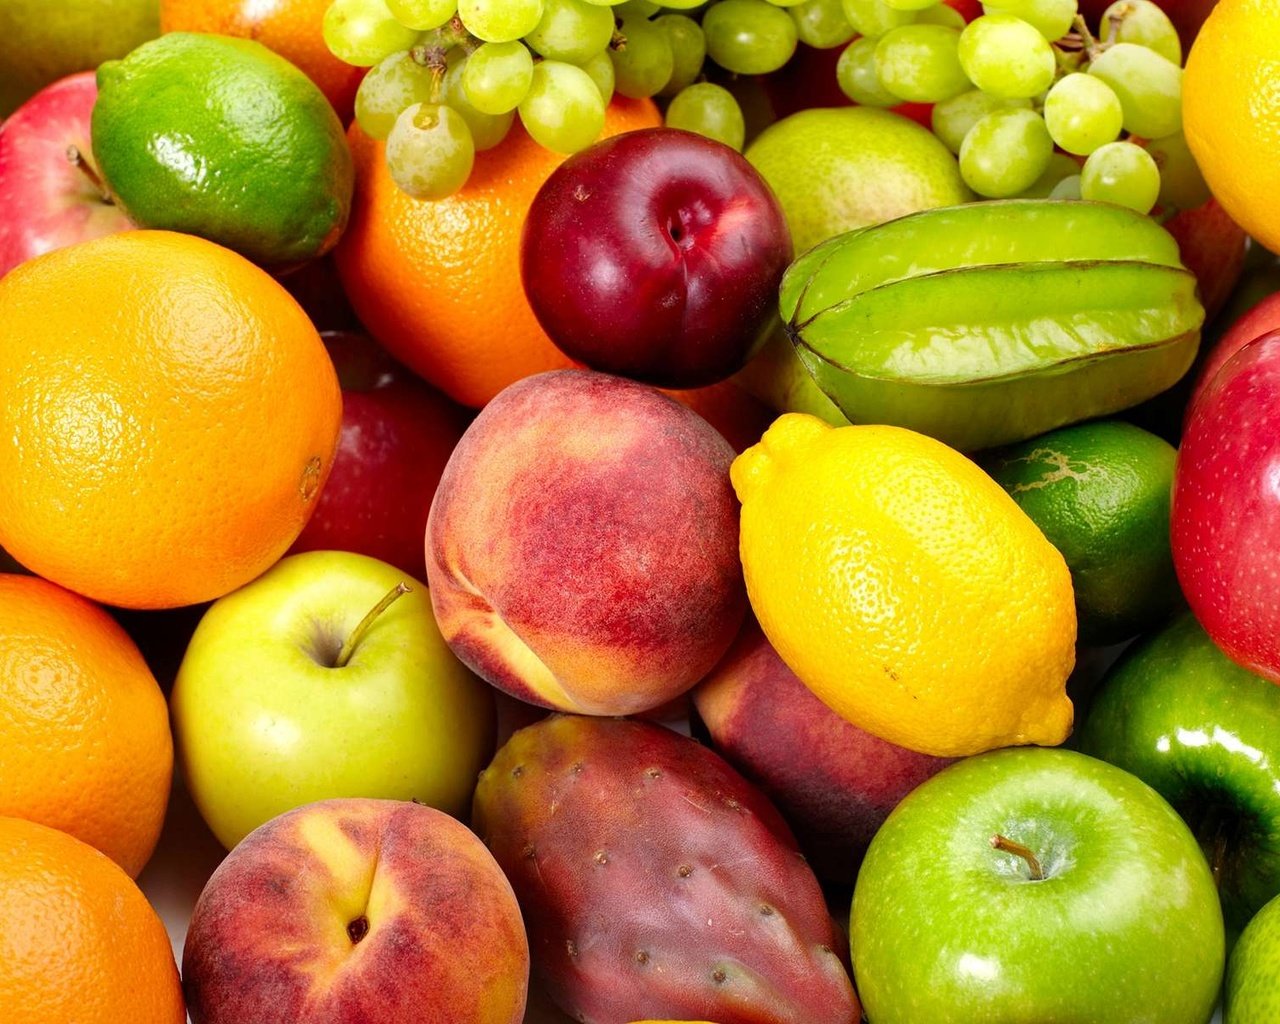 нектарин, фрукты, карамбола, яблоки, апельсины, лимон, лайм, персики, груши...